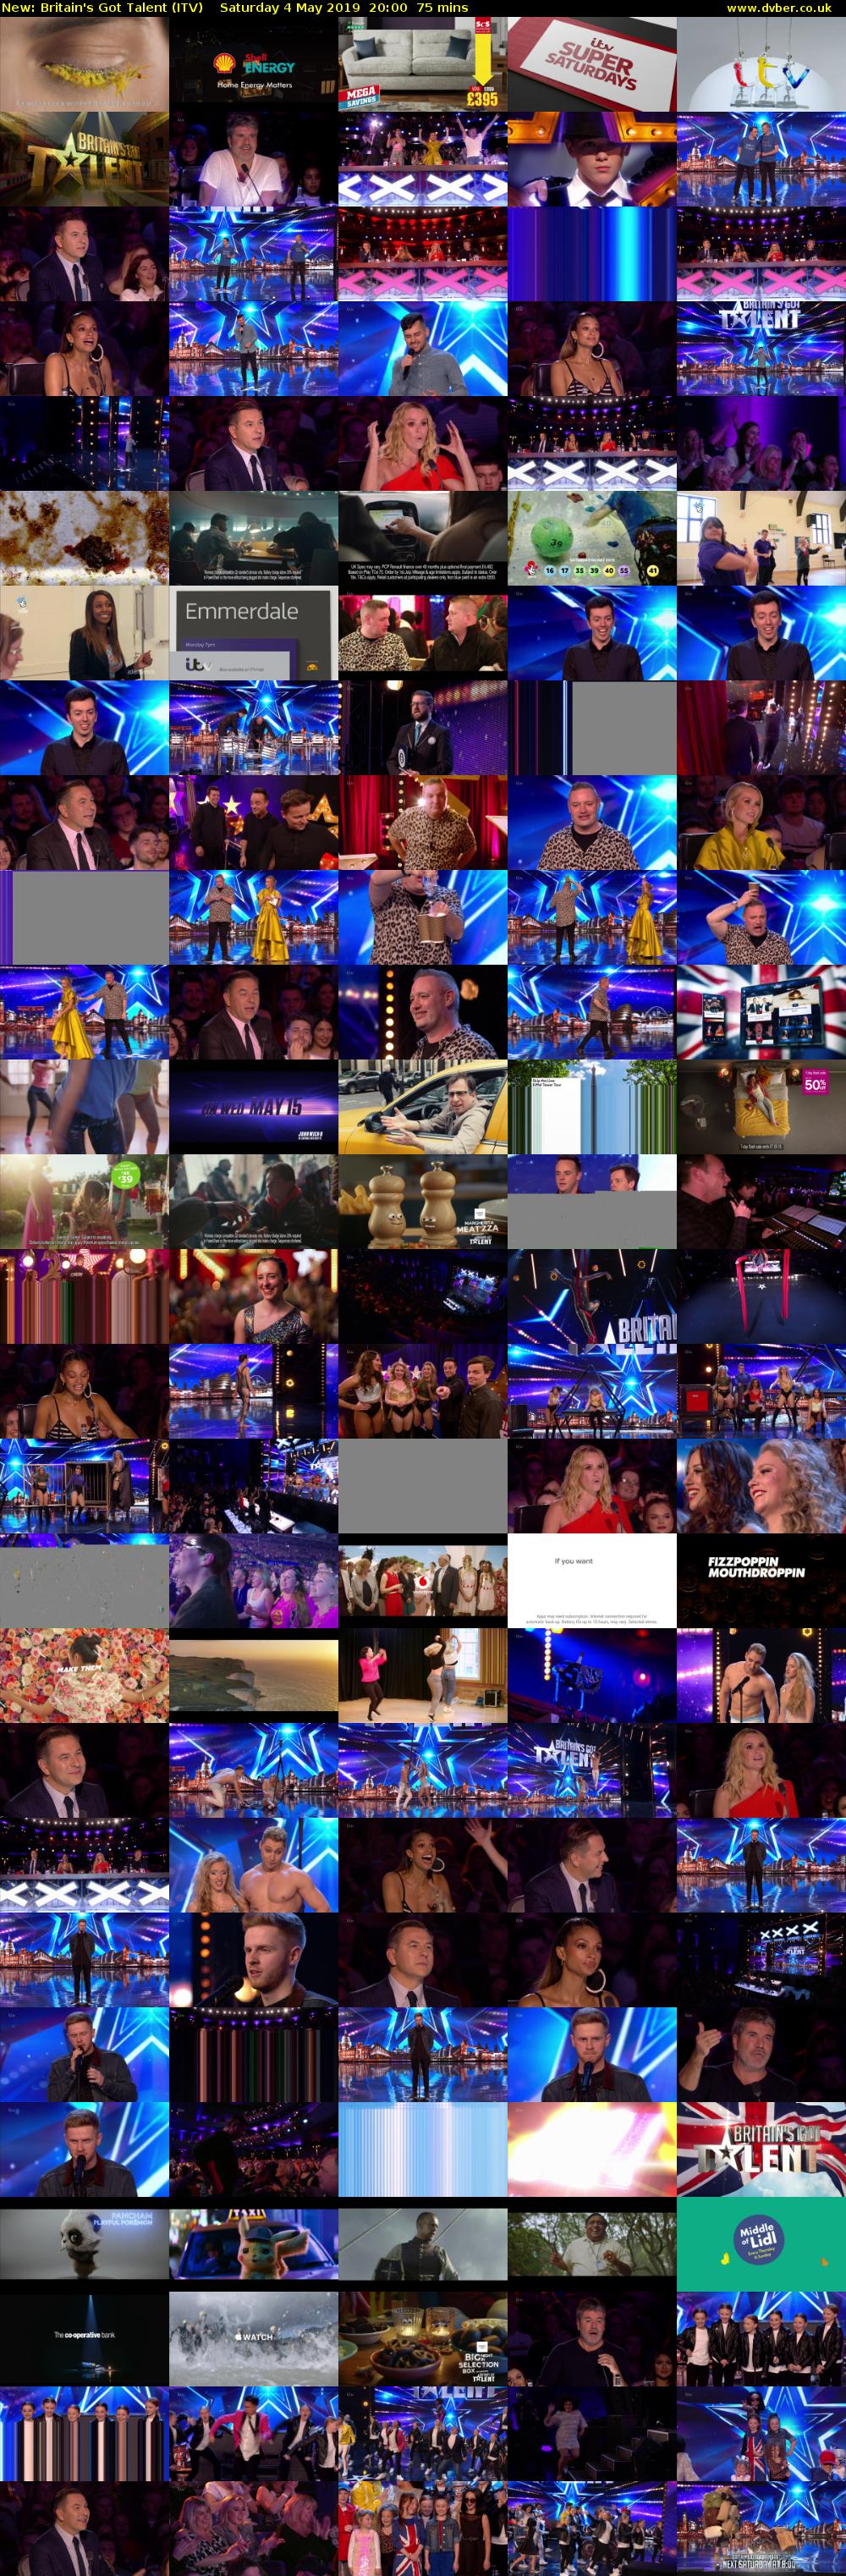 Britain's Got Talent (ITV) Saturday 4 May 2019 20:00 - 21:15